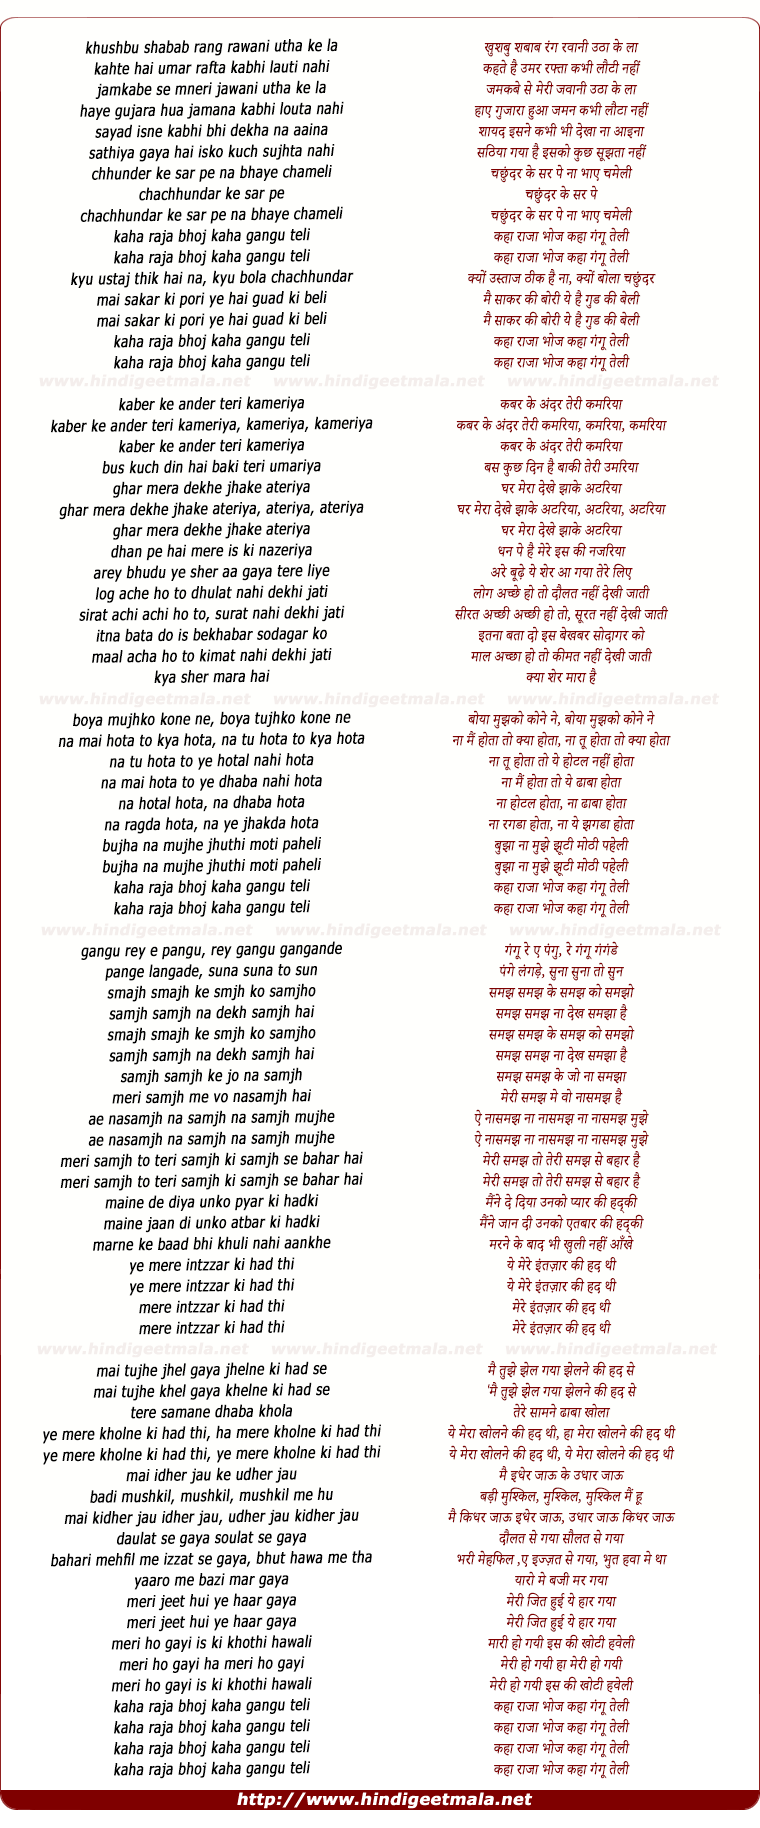 lyrics of song Kahan Raja Bhoj Kahan Gangu Teli